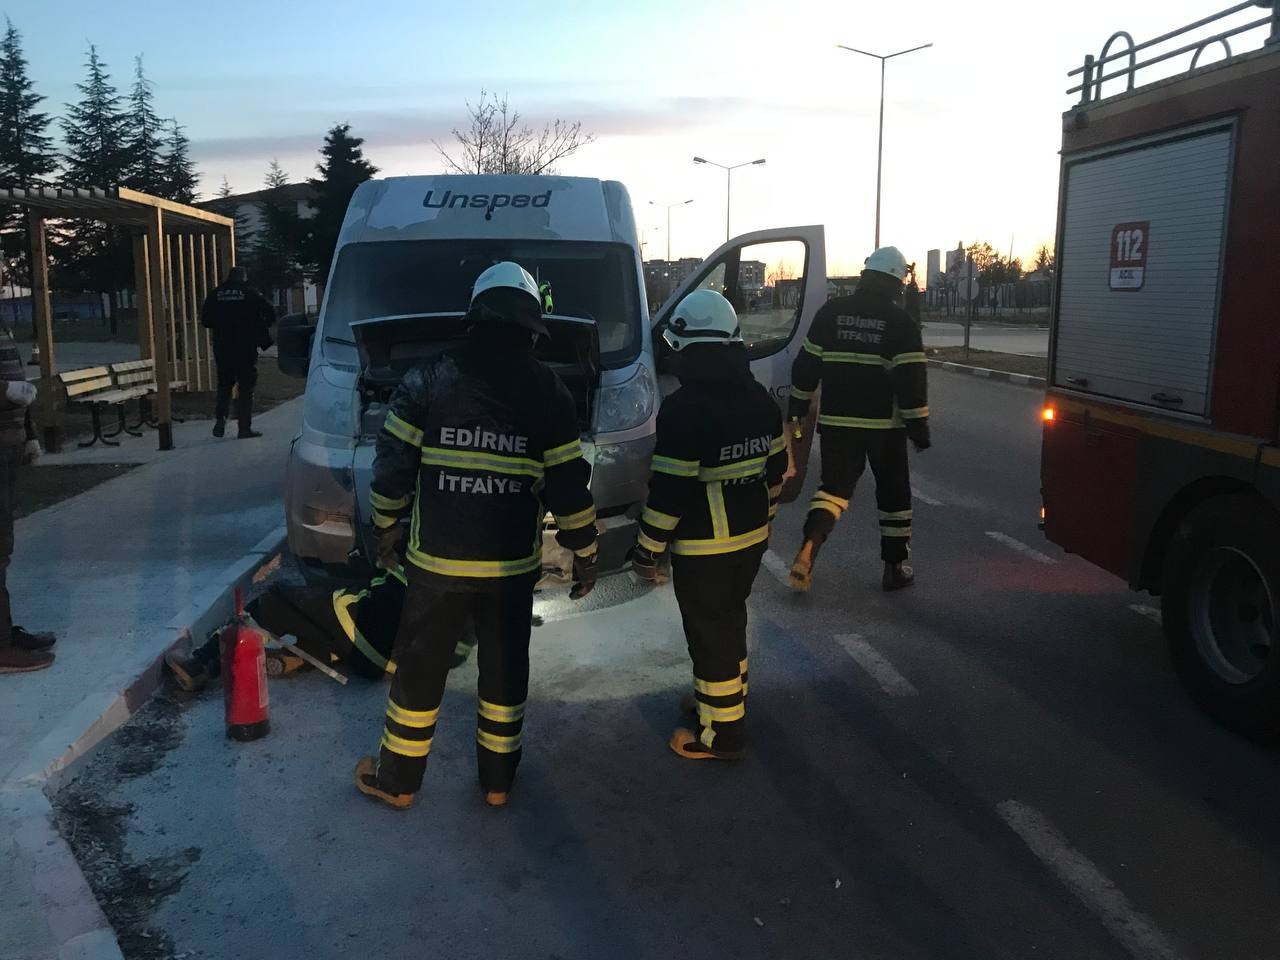 Edirne’de park halindeki kargo aracı yandı #edirne